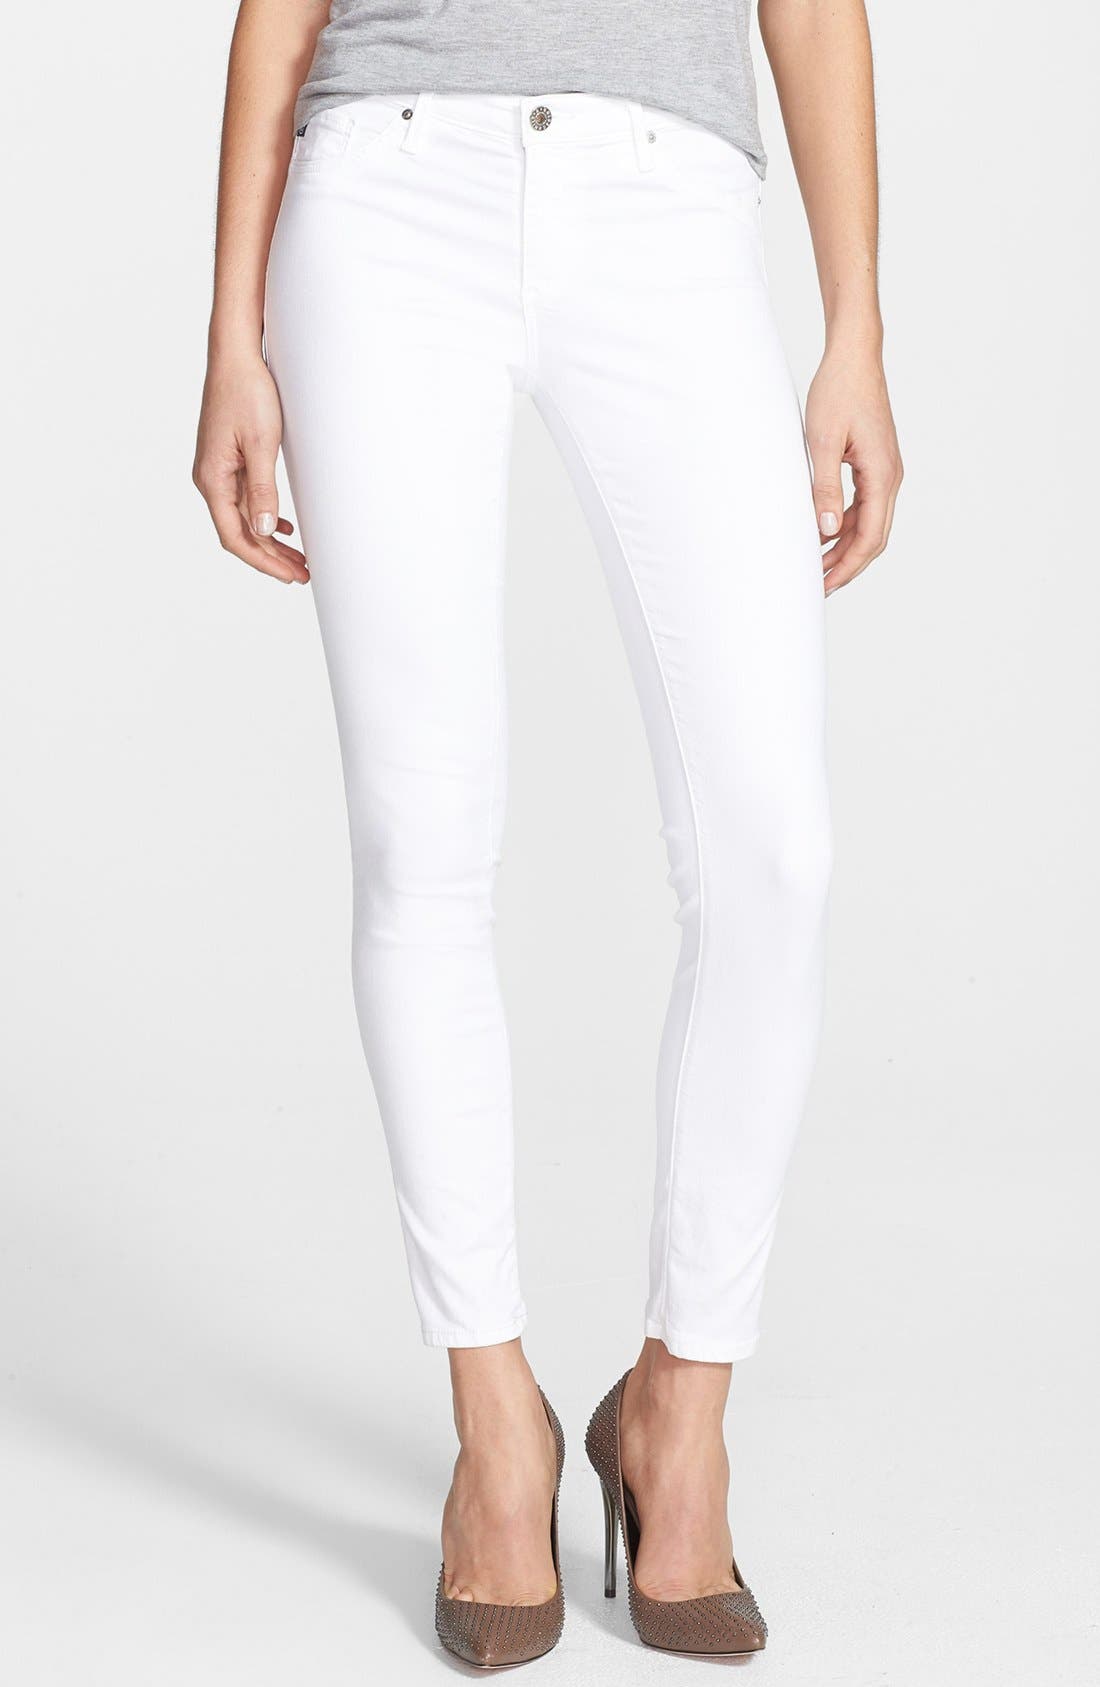 ag jeans white